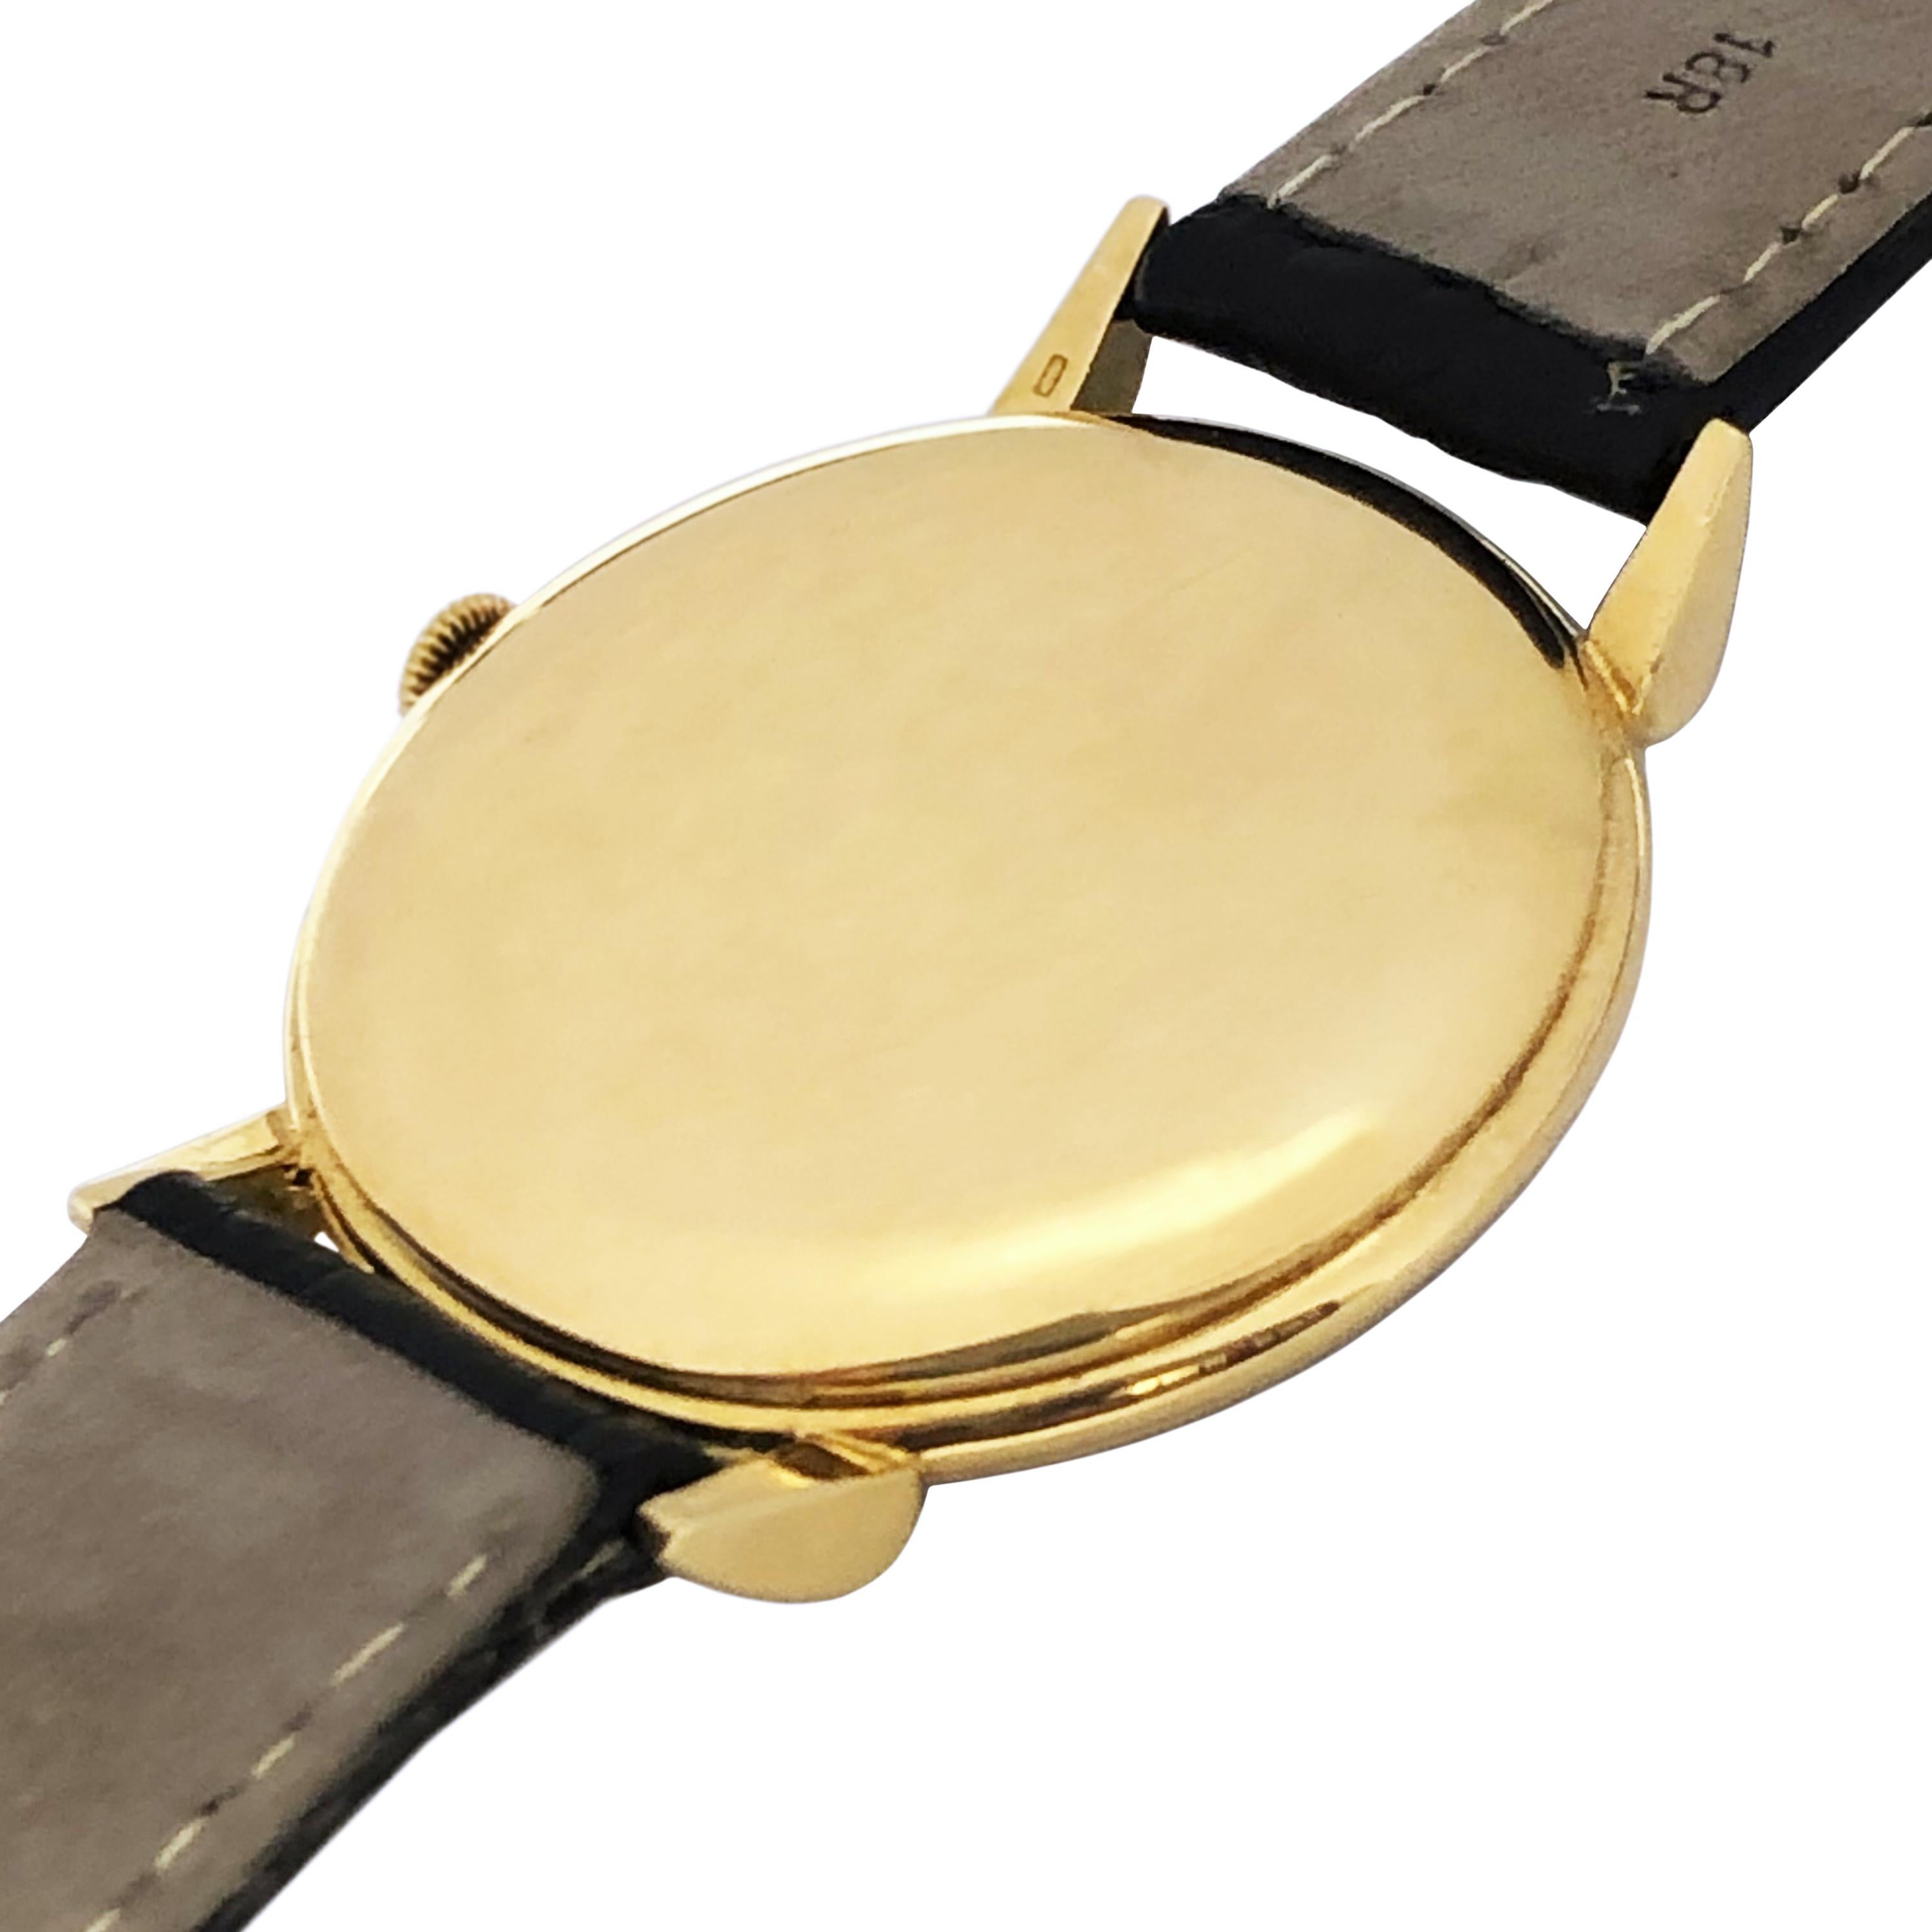 iwc schaffhausen gold watch